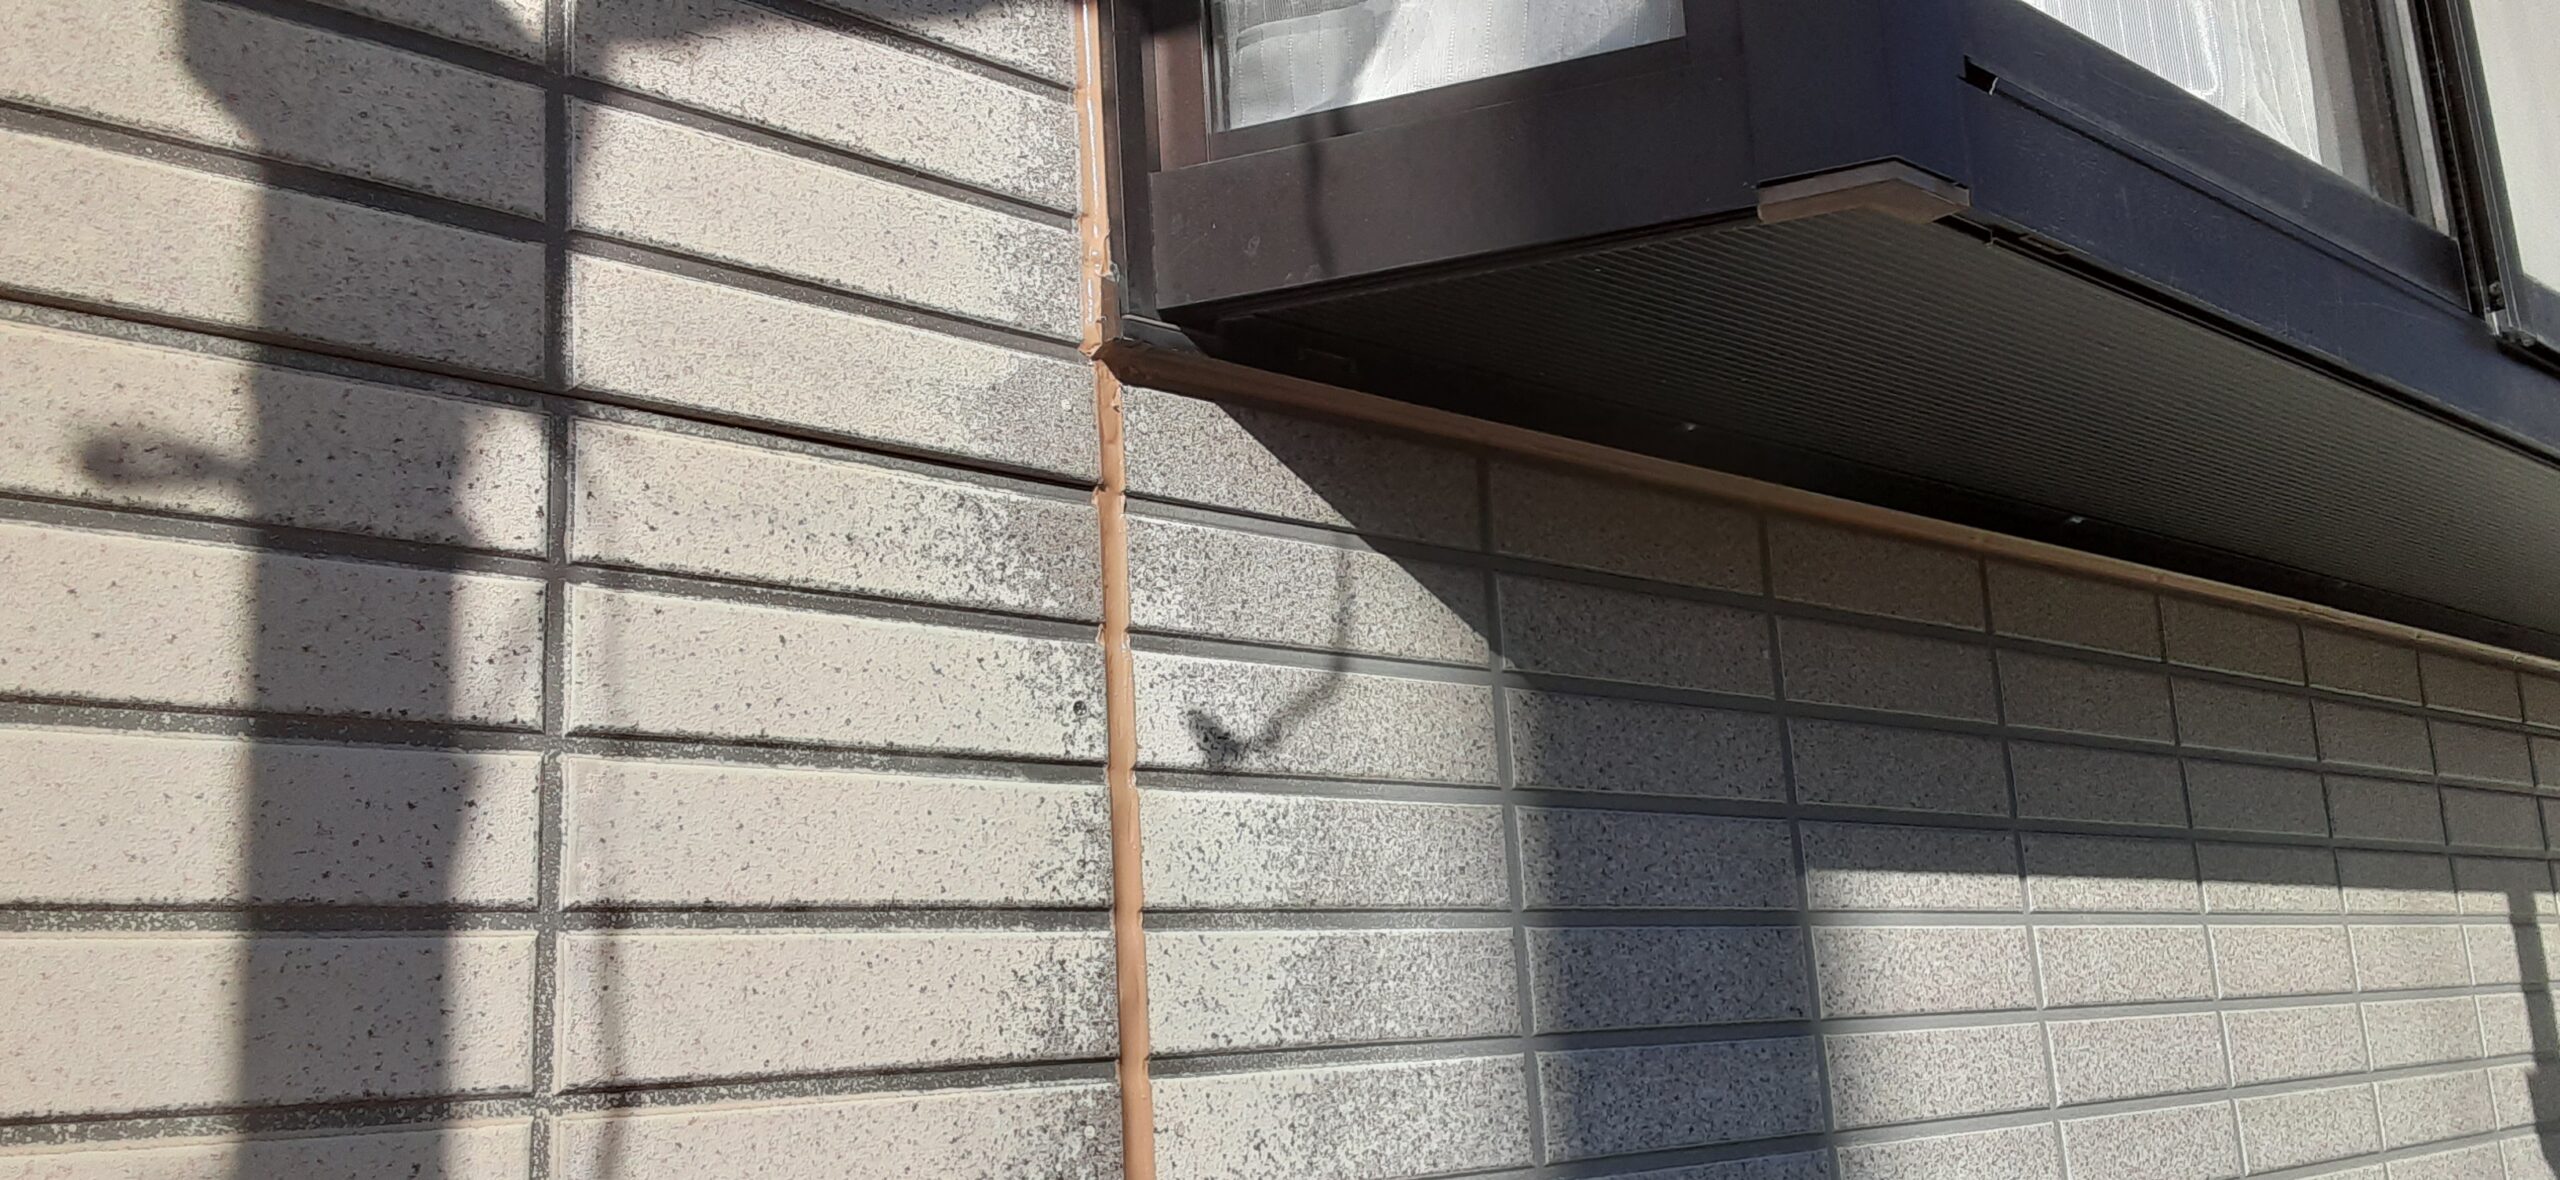 埼玉県さいたま市　外壁コーキング打ち替え、養生/さいたま市岩槻区の(木造2階建て)M様邸にて塗り替えリホーム中